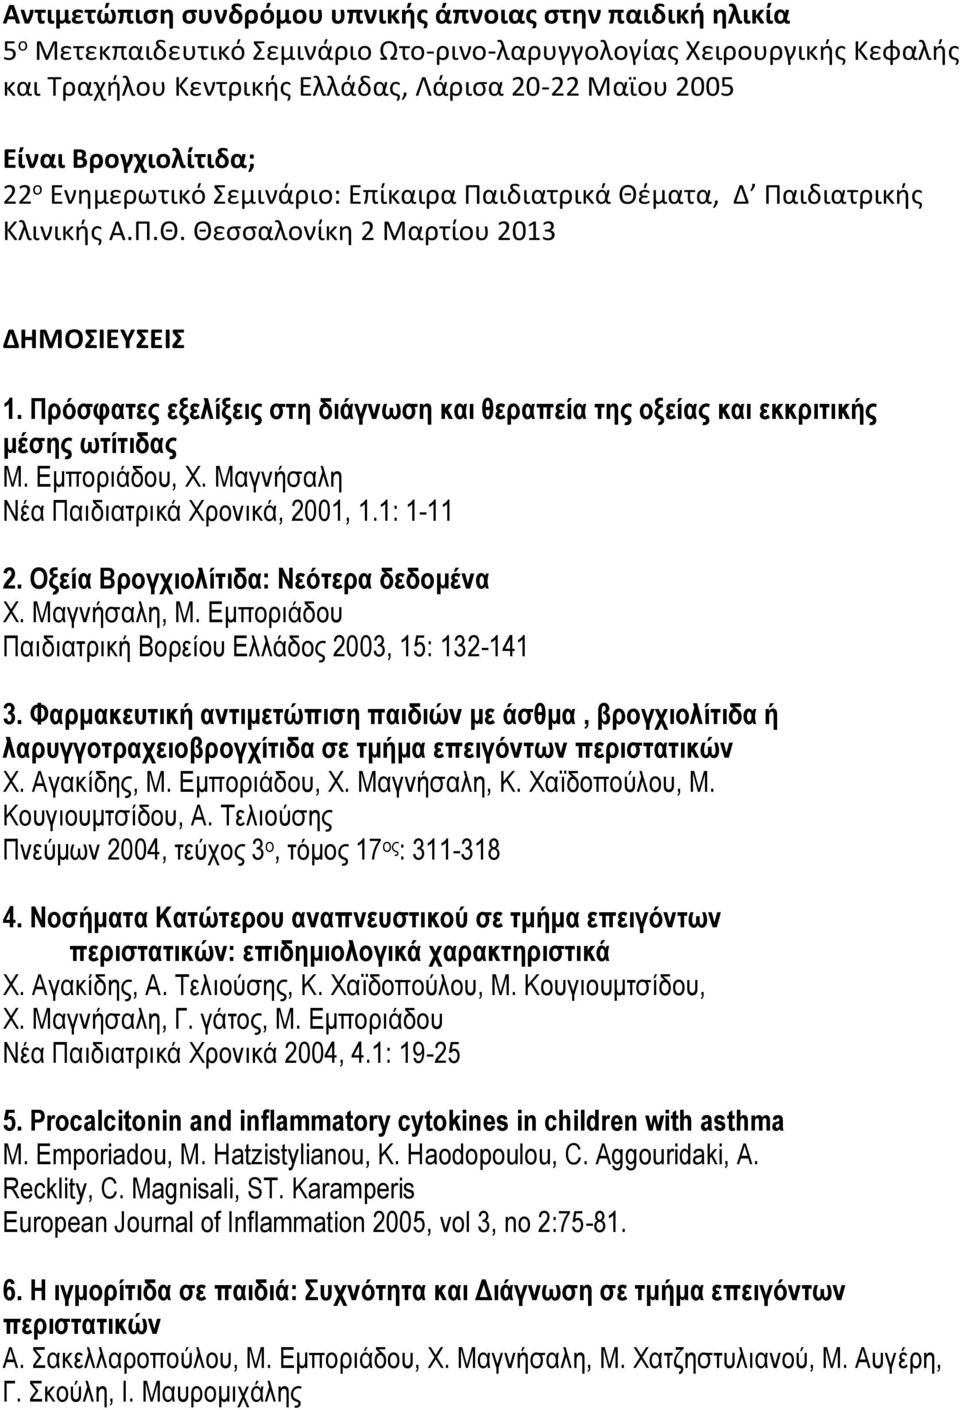 Πρόσφατες εξελίξεις στη διάγνωση και θεραπεία της οξείας και εκκριτικής μέσης ωτίτιδας Μ. Εμποριάδου, Χ. Μαγνήσαλη Νέα Παιδιατρικά Χρονικά, 2001, 1.1: 1-11 2. Οξεία Βρογχιολίτιδα: Νεότερα δεδομένα Χ.